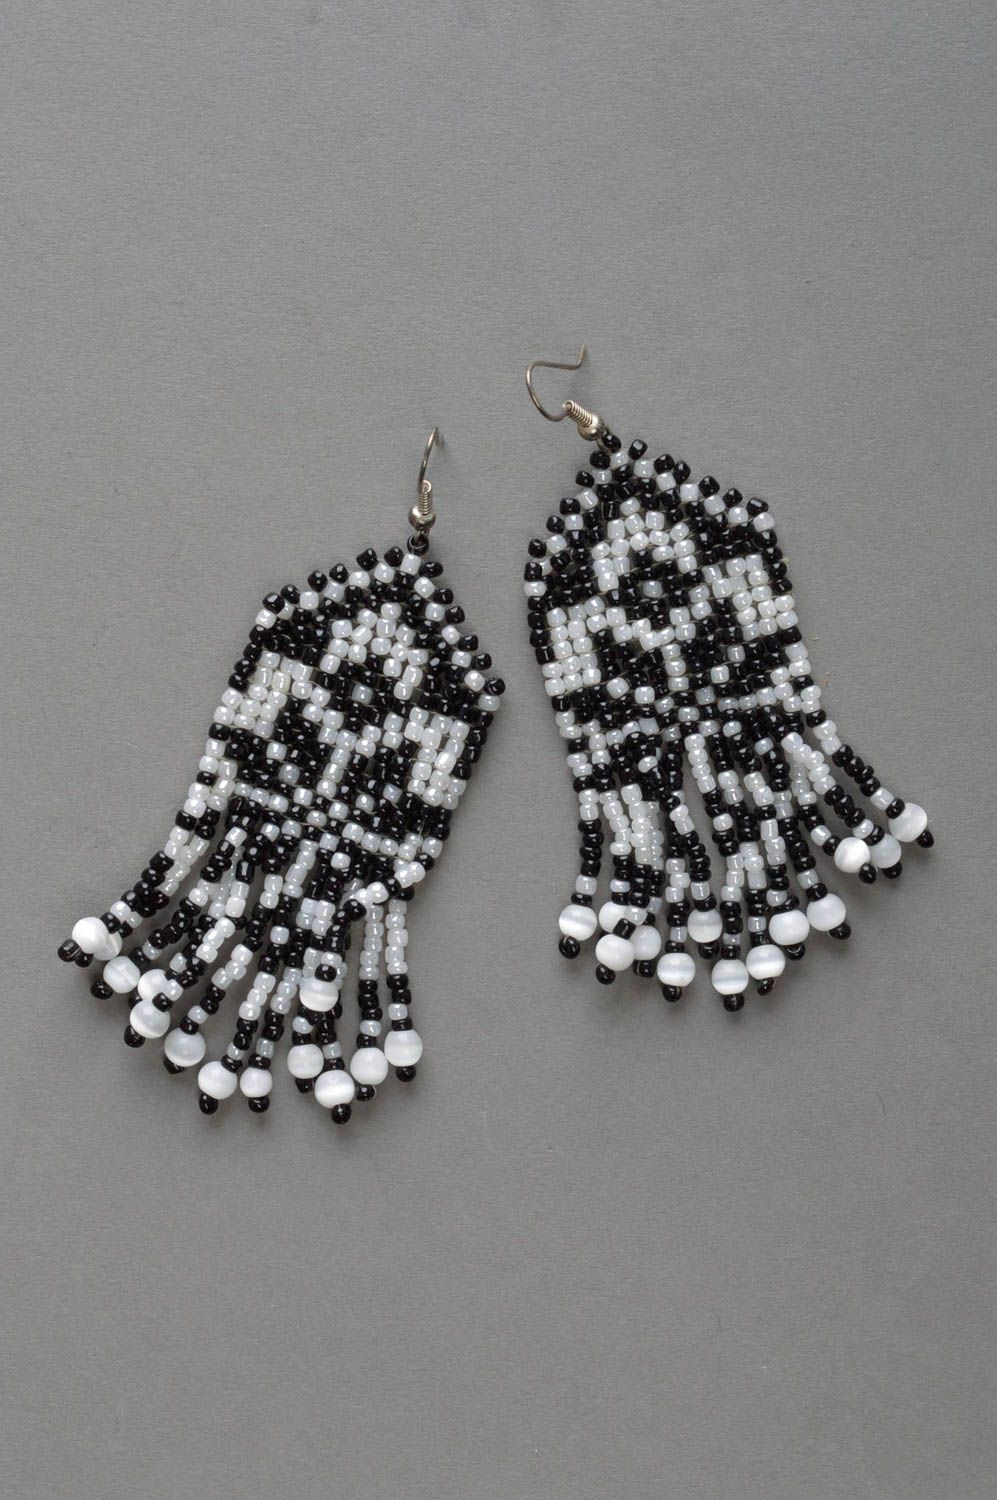 Handmade beaded earrings fringe earrings stylish jewelry gift idea for women photo 2